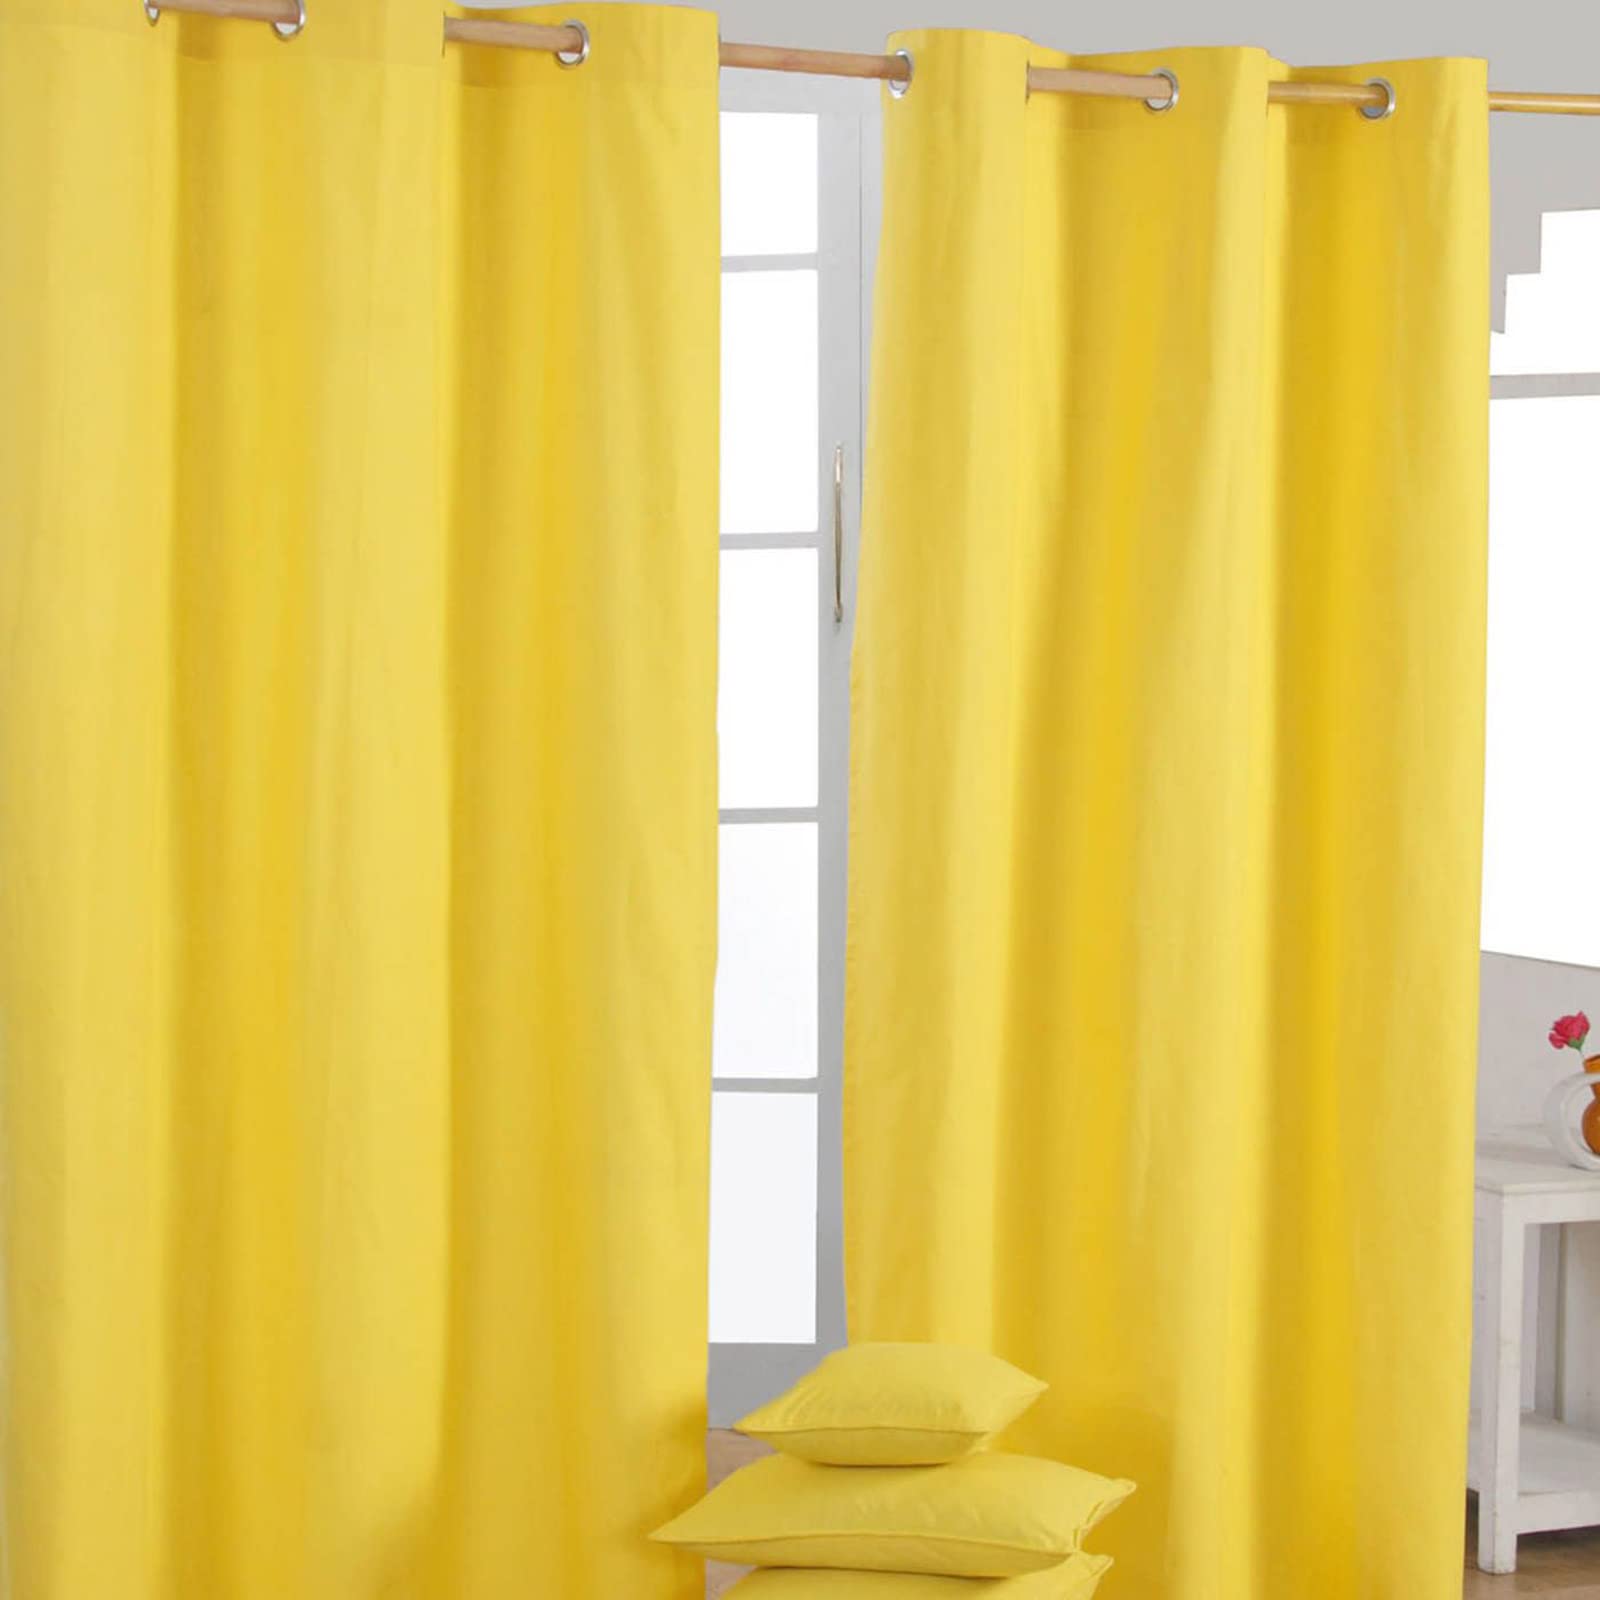 Homescapes 2er Set eifarbige Ösen Gardinen je B117 x L137 cm aus 100% Baumwolle, blickdichte Vorhänge/Dekoschals/Ösenvorhänge für Wohnzimmer oder Küche, gelb